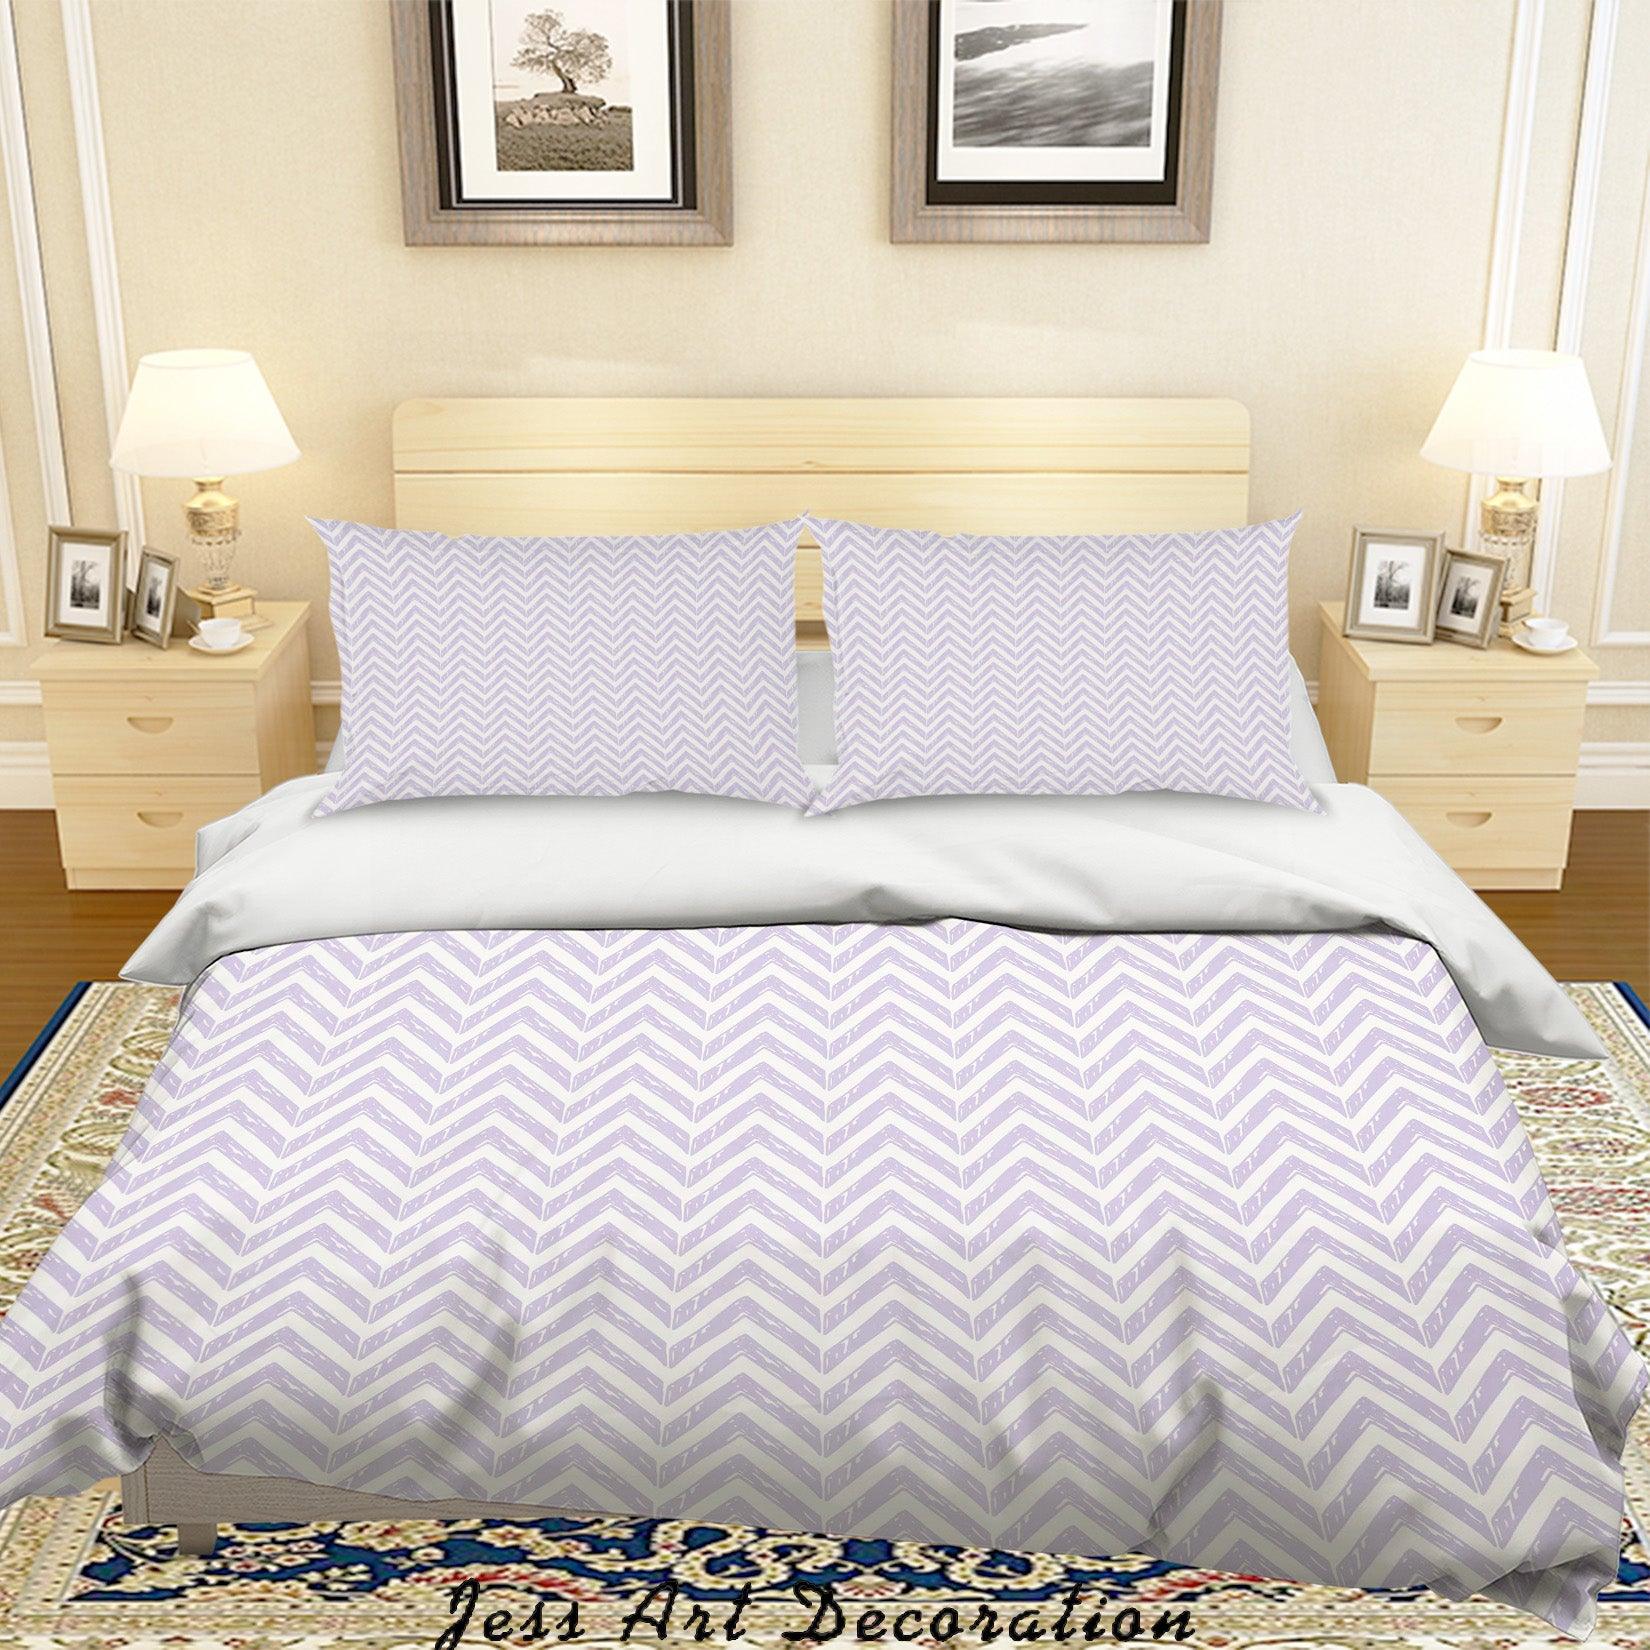 3D Wavy Line Quilt Cover Set Bedding Set Duvet Cover Pillowcases SF02- Jess Art Decoration